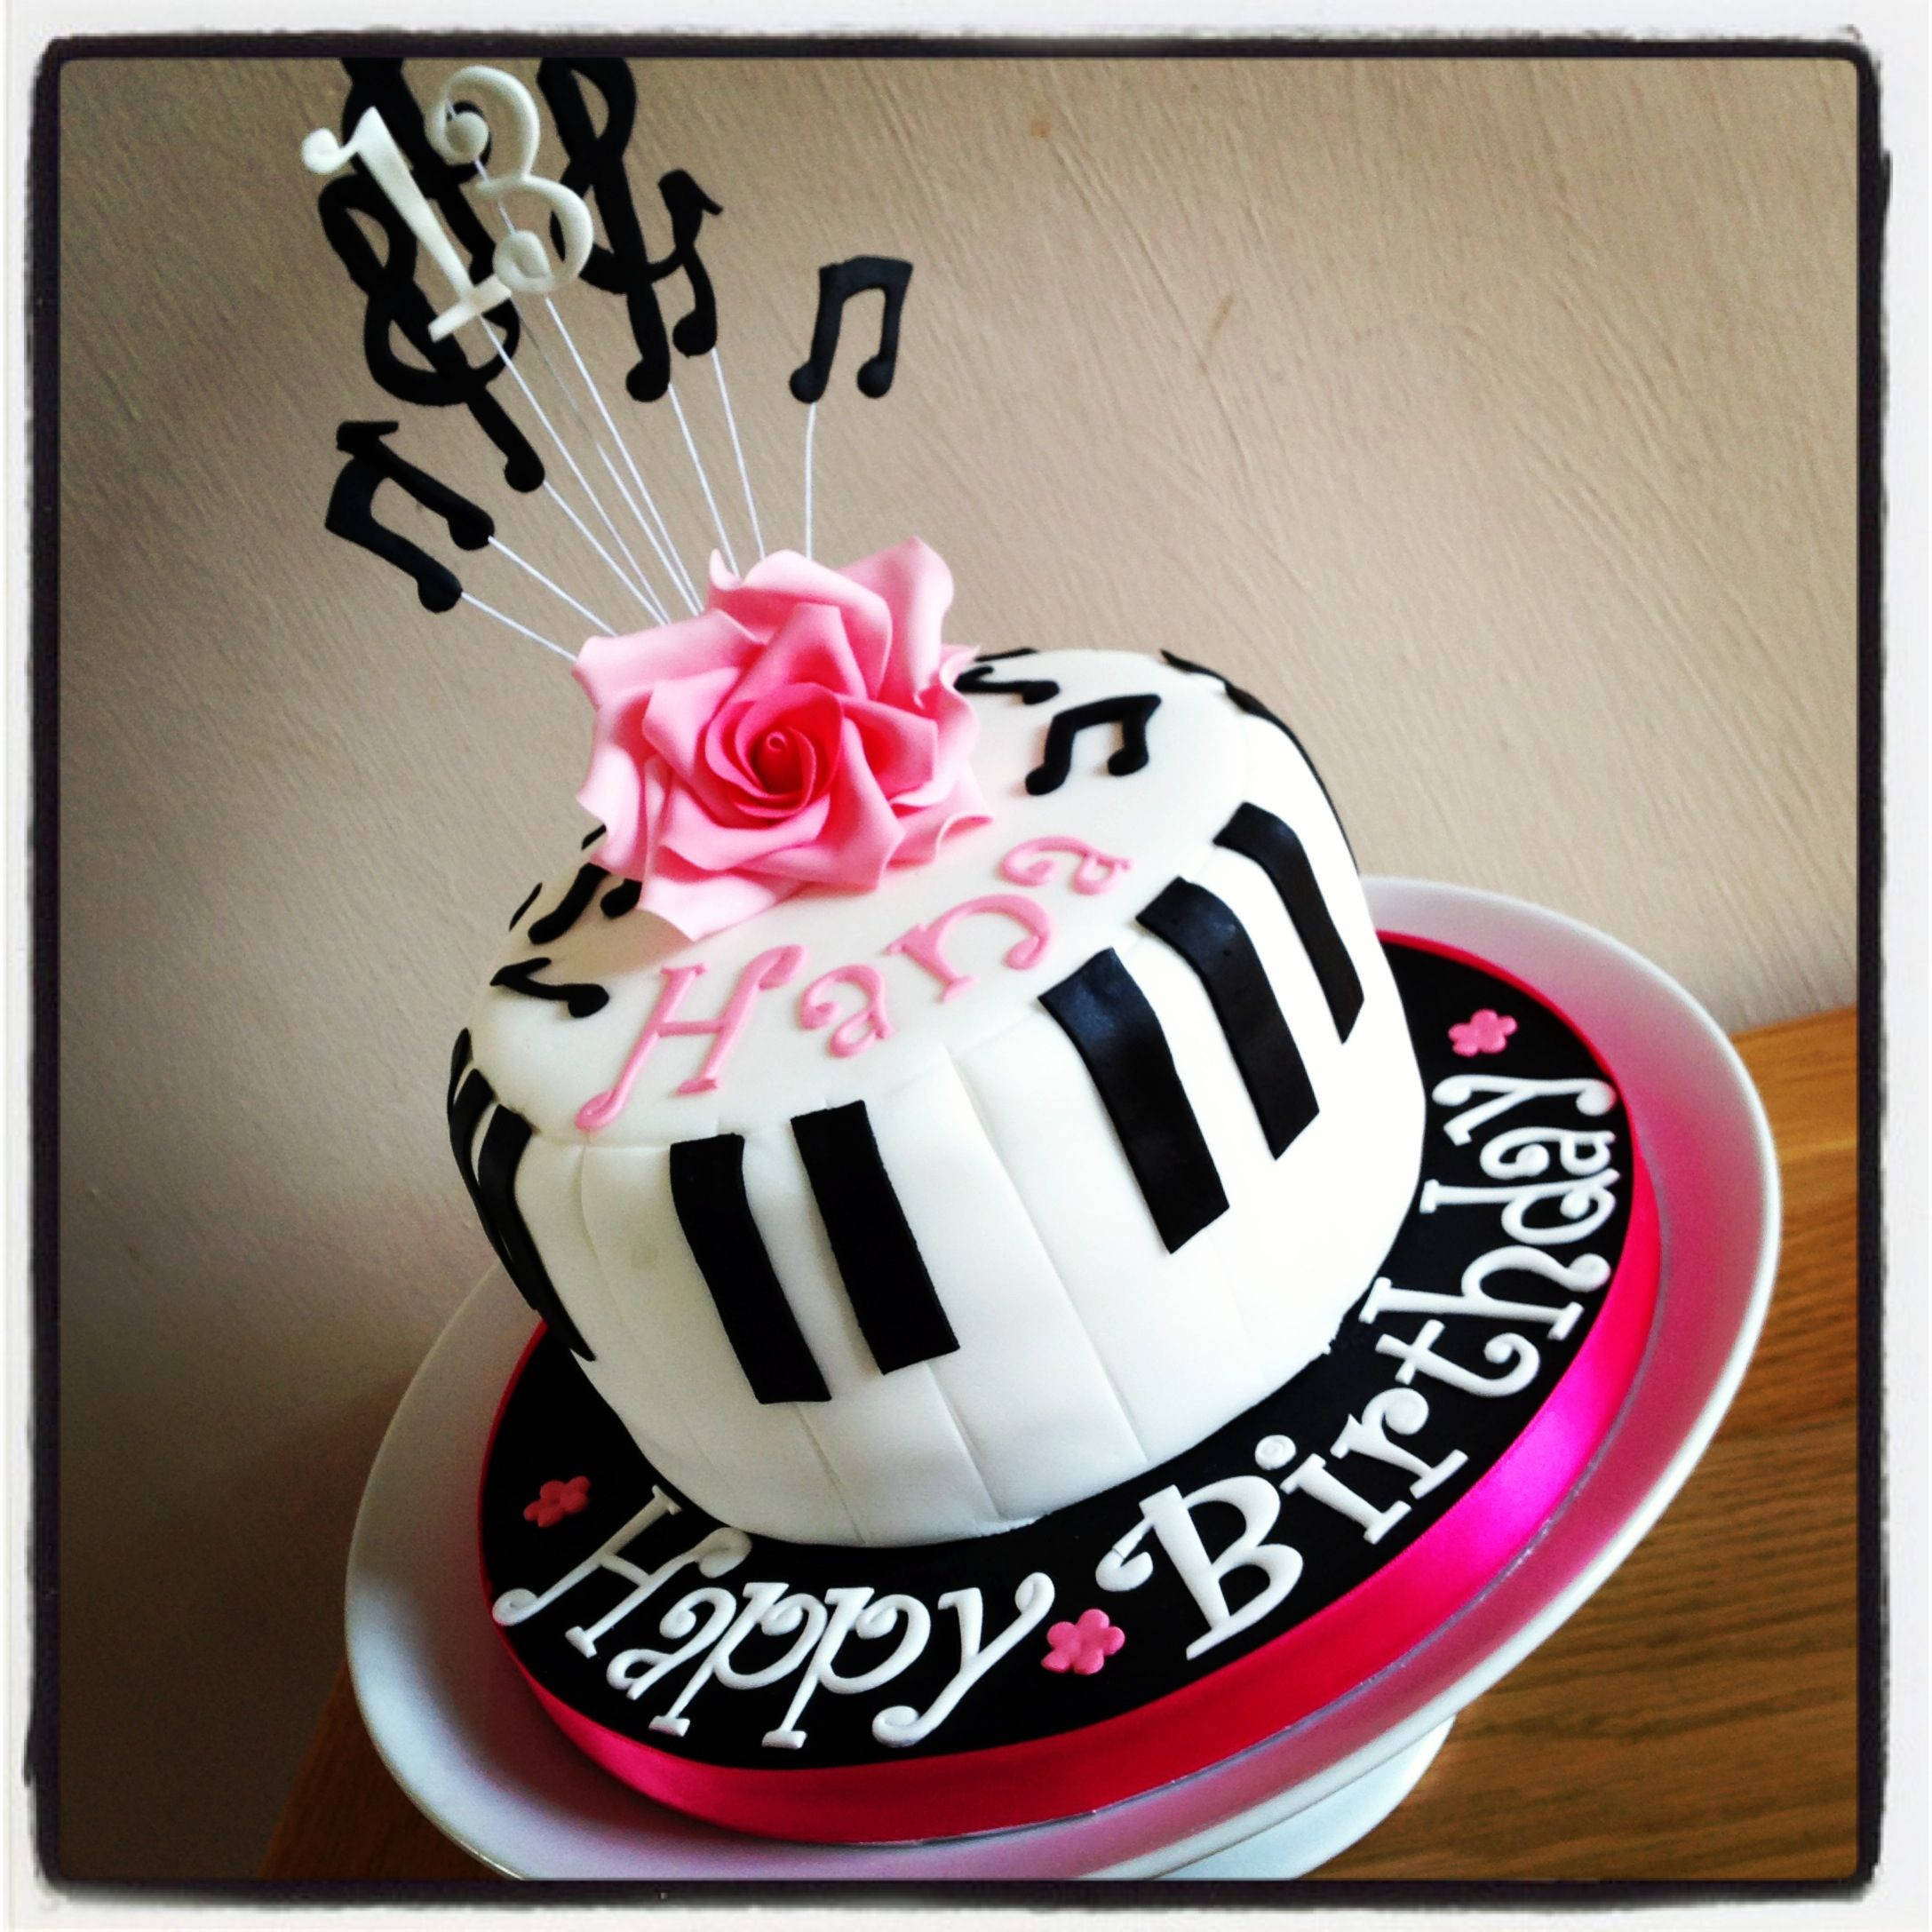 Music Birthday Cakes
 Piano music birthday cake